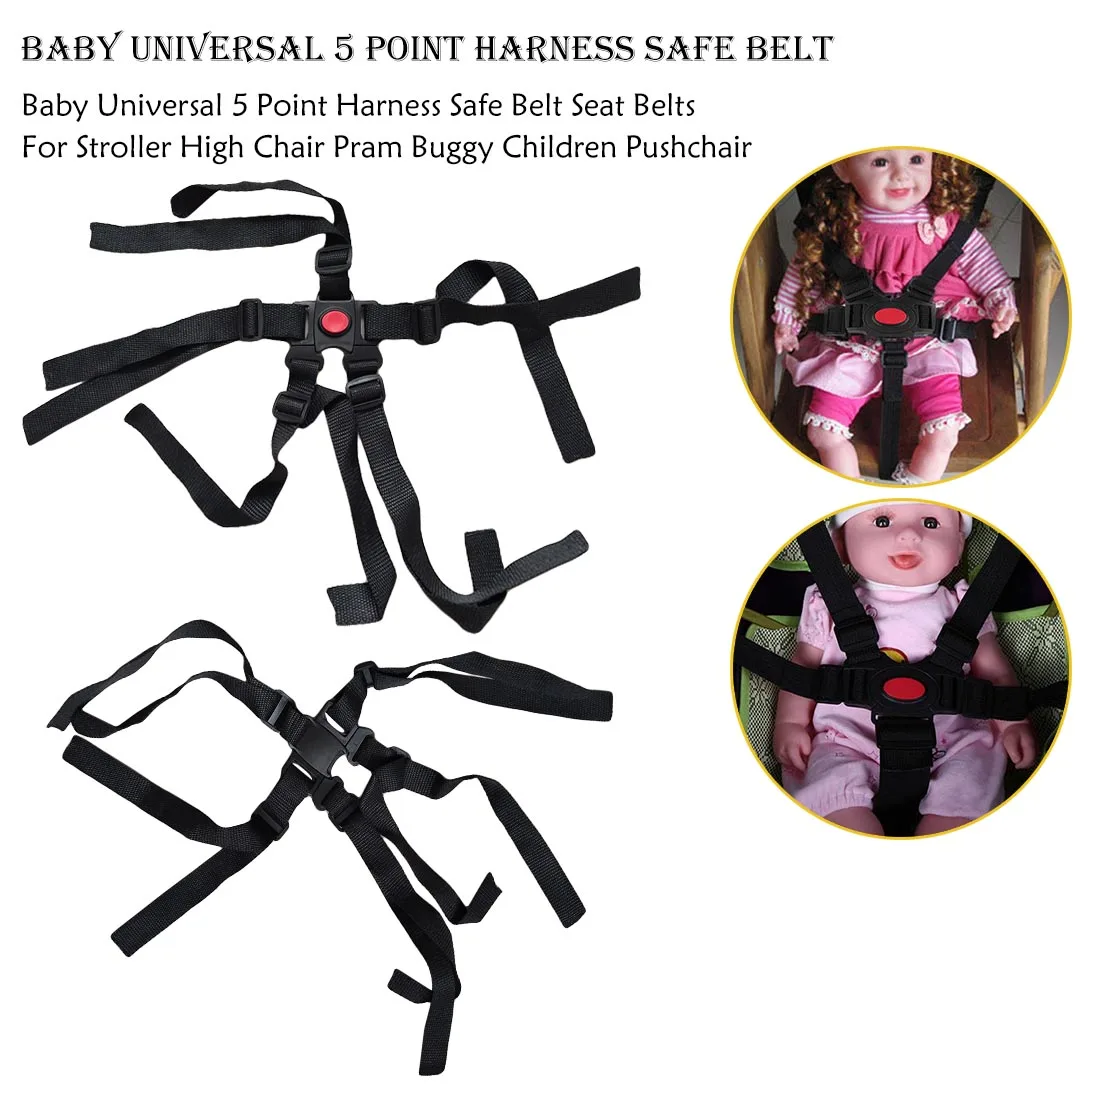 Детские универсальные 5 точечные ремни безопасности ремень безопасности аксессуары для коляски ремни для коляски высокий стул коляска безопасный простой в использовании